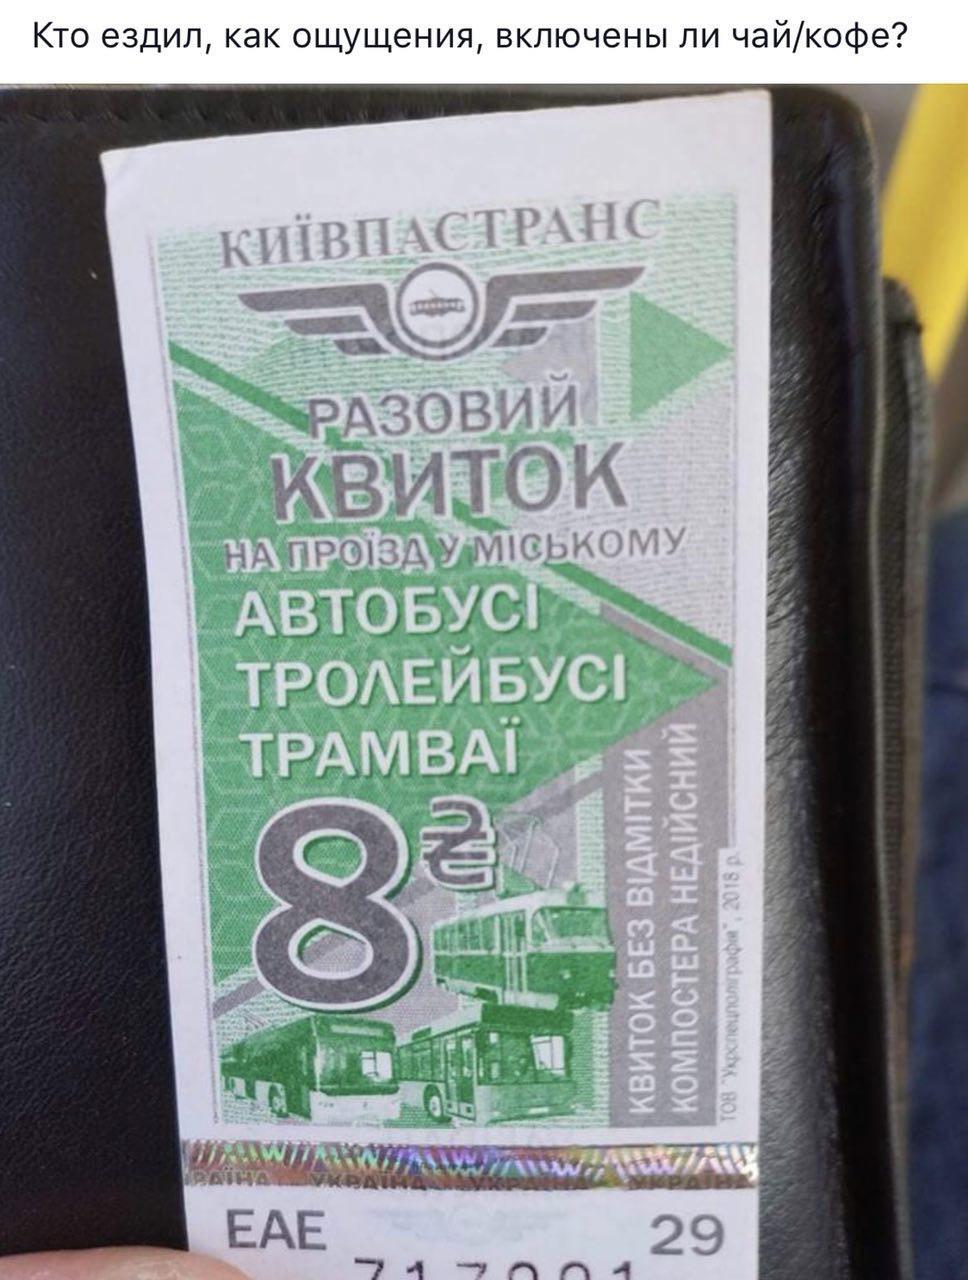 "Вместо доллара по восемь": киевляне высказались о повышении тарифов на проезд 